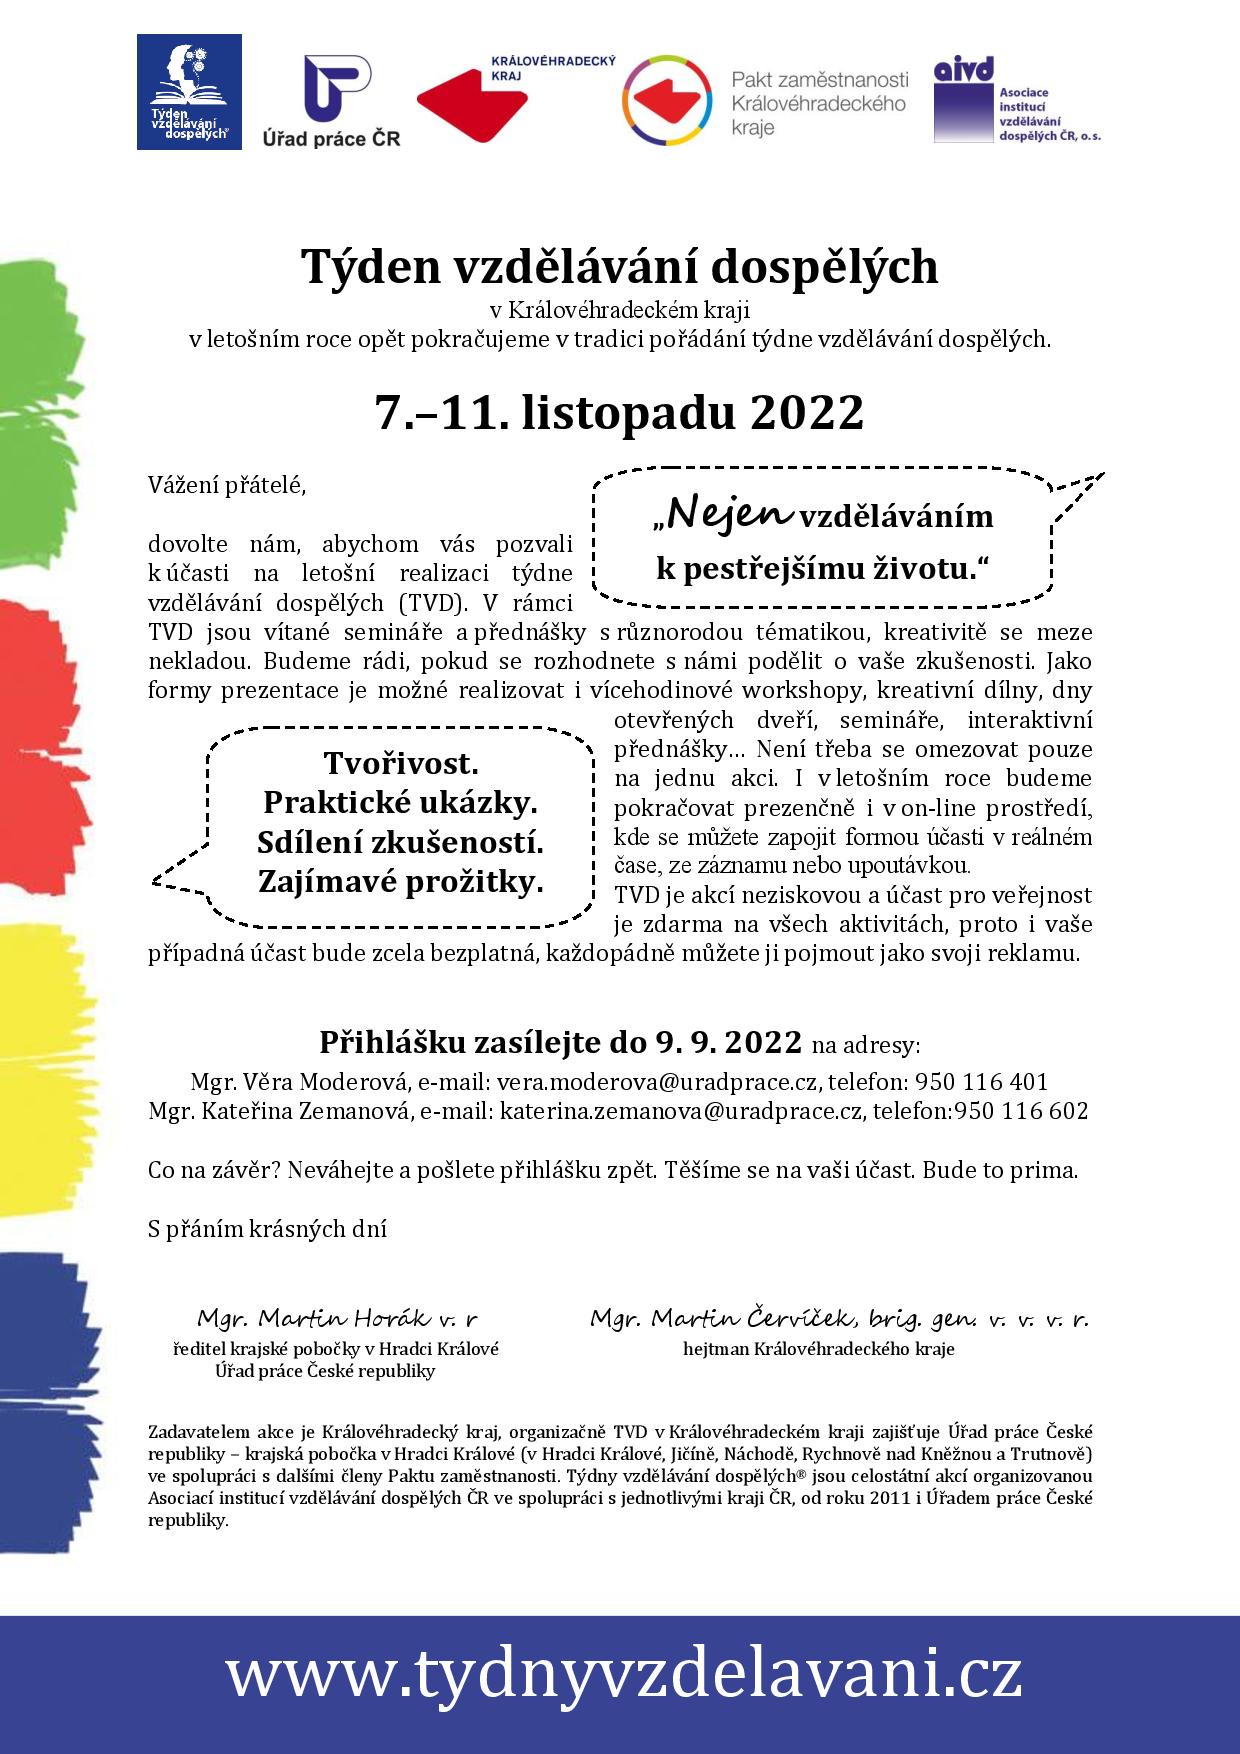 Můžete se již přihlásit, pořádání Týdne vzdělávání dospělých se v Královéhradeckém kraji uskuteční od 7. do 11. listopadu 2022 